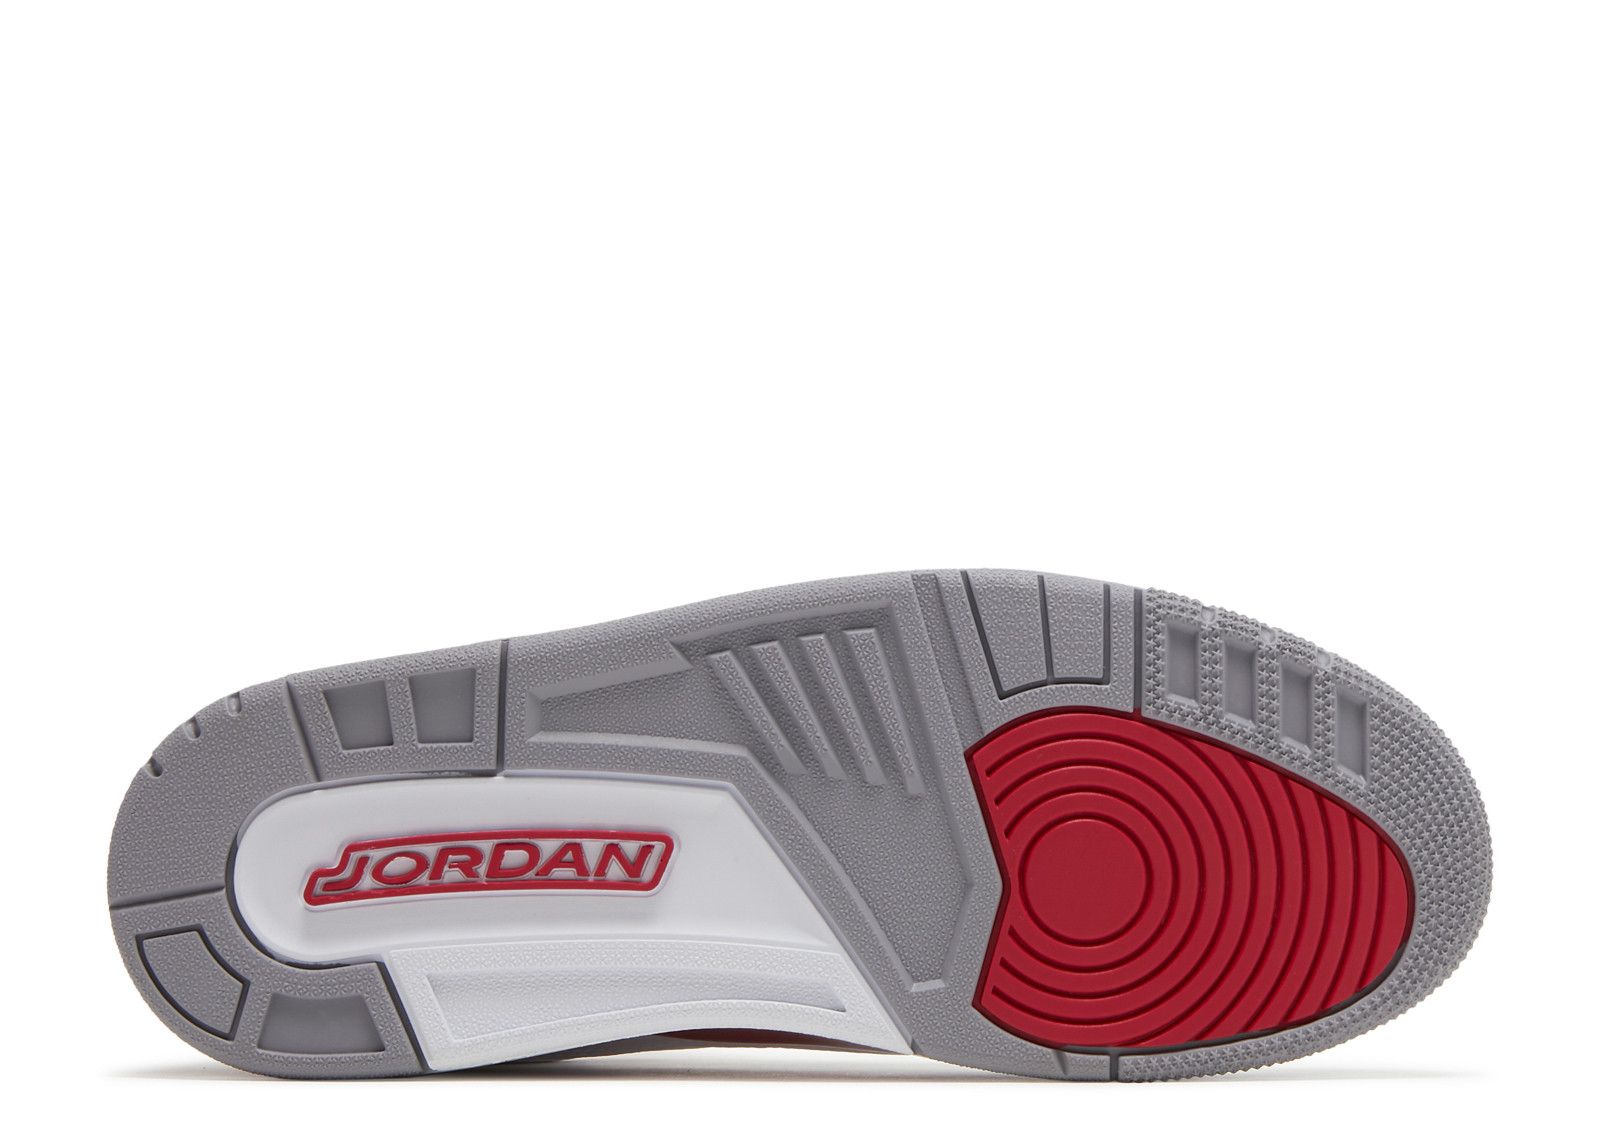 Air Jordan 3 Retro 'Cardinal Red' - Air Jordan - CT8532 126 - white ...